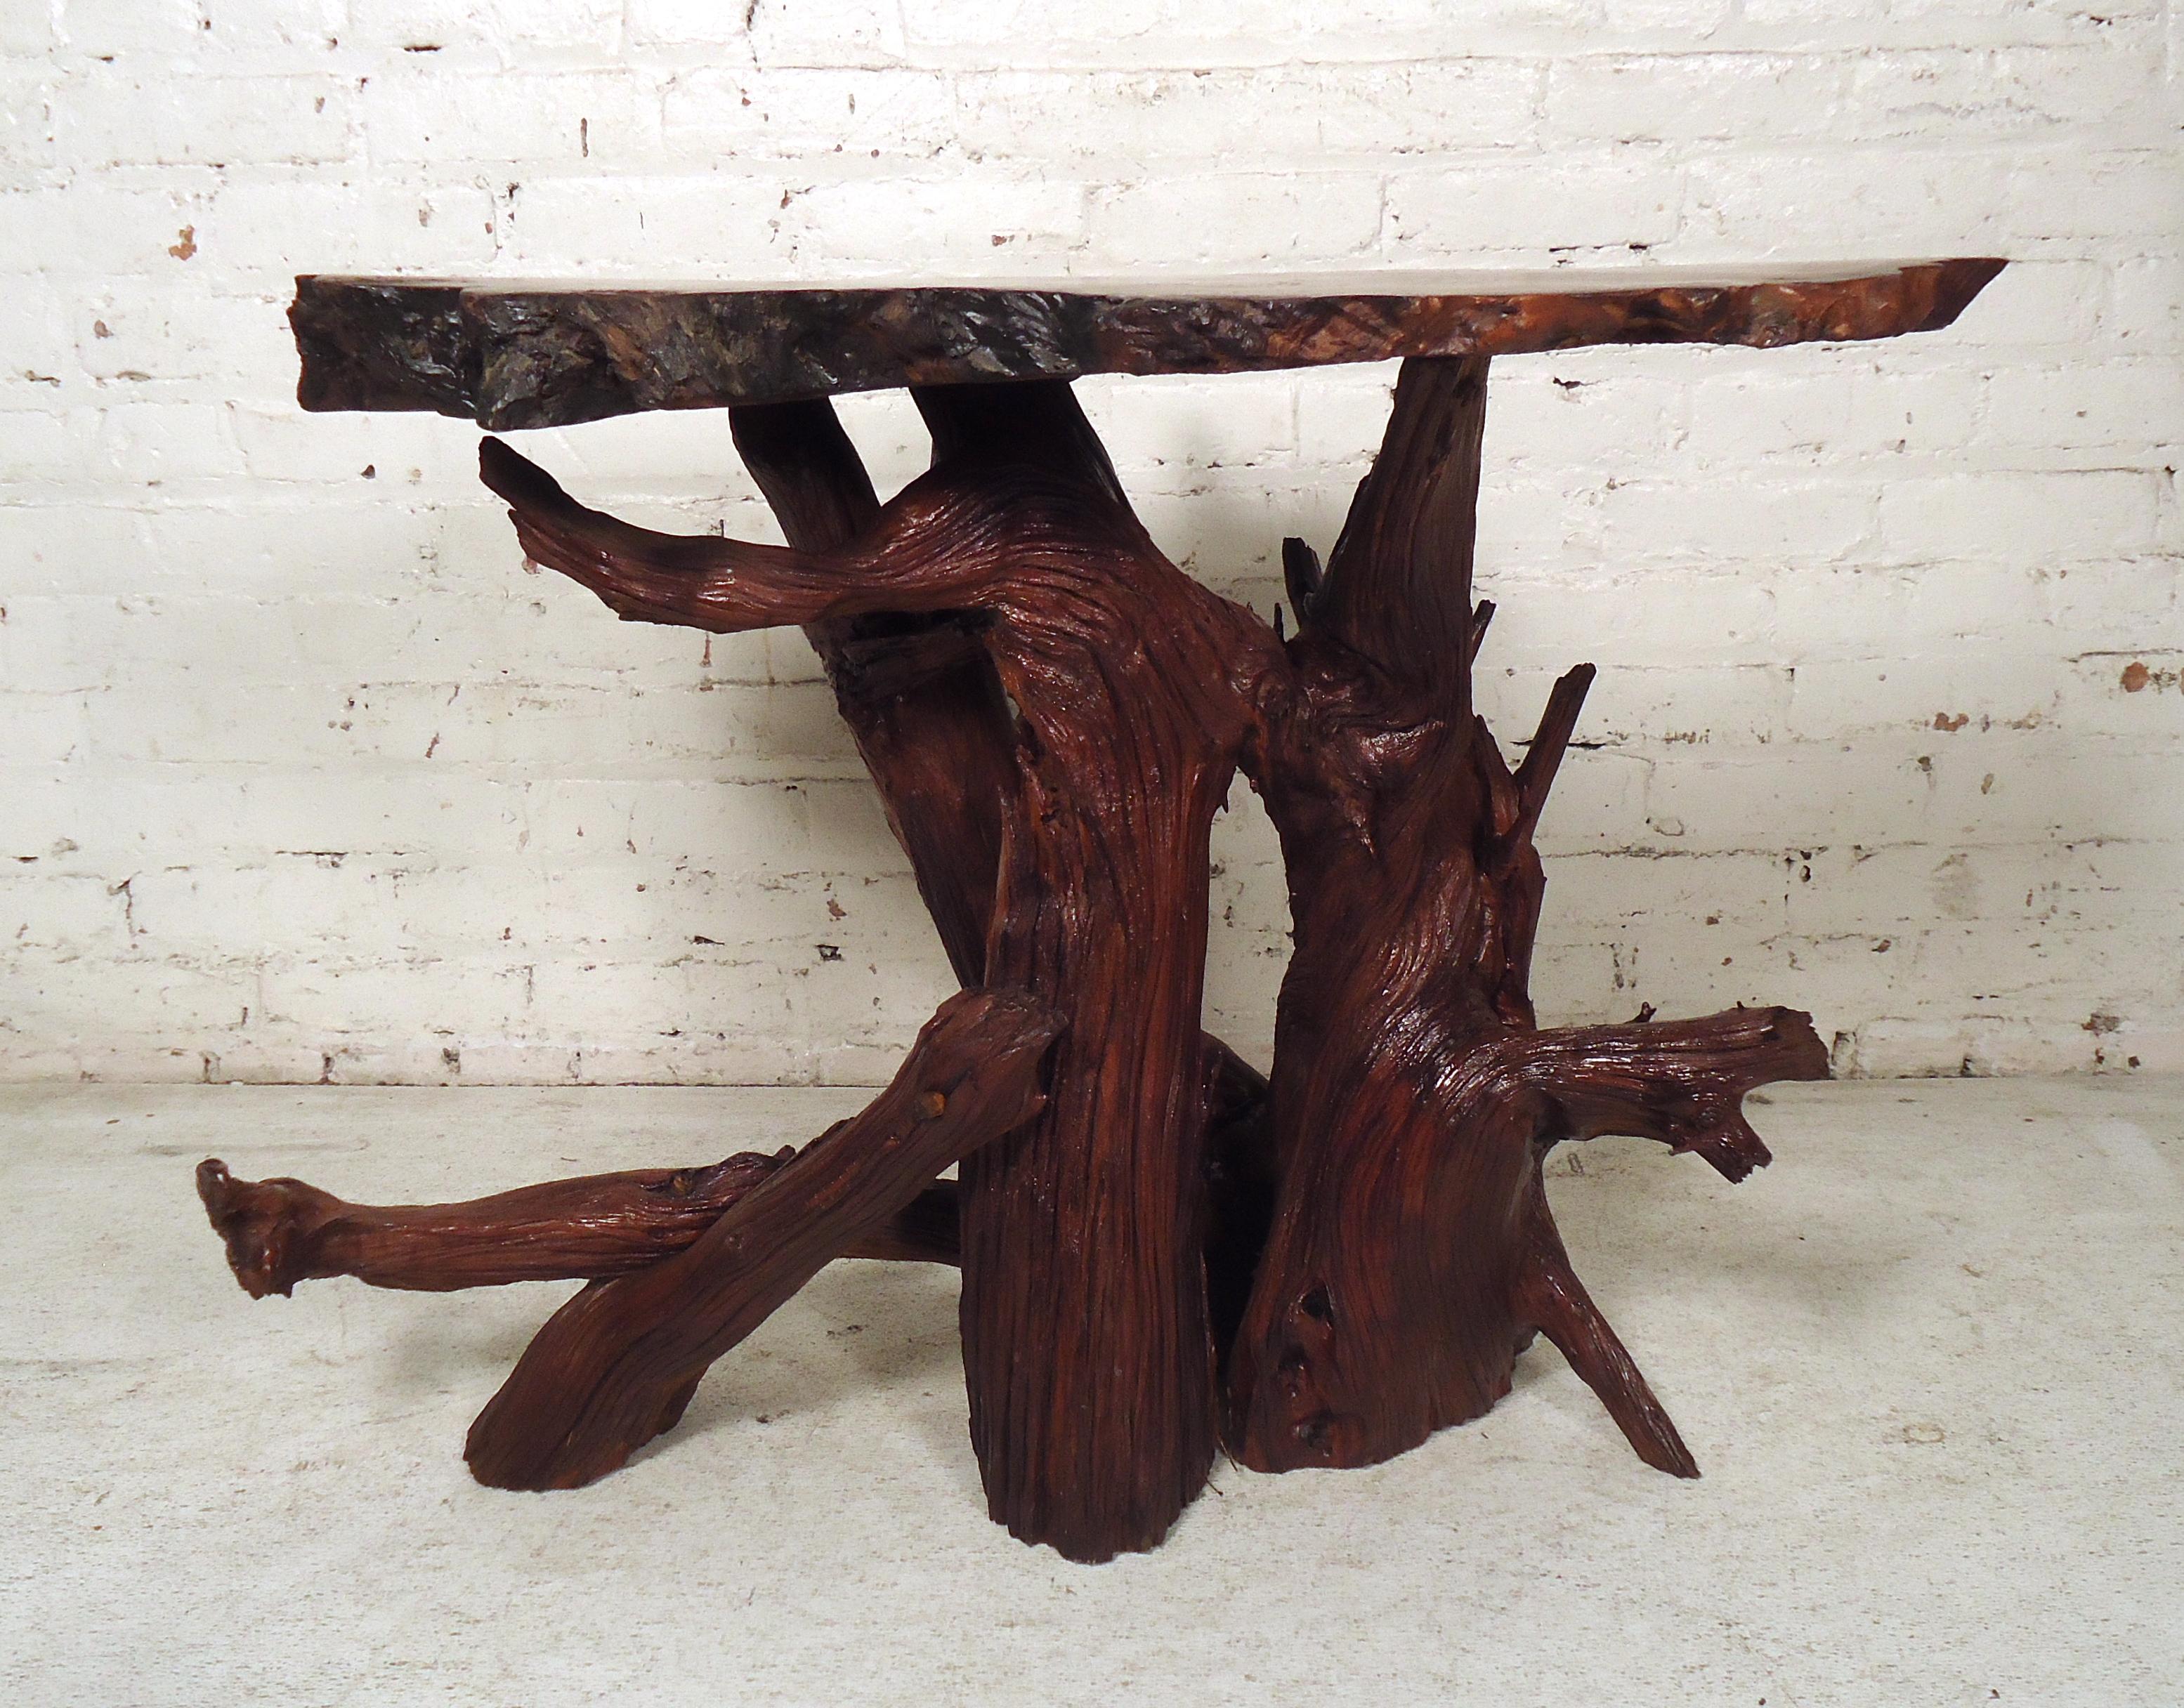 Cette magnifique table basse vintage moderne est fabriquée en bois dur naturel avec un plateau en dalle d'arbre unique. L'attrait rustique et vintage ne manquera pas de faire impression dans tout intérieur moderne. Veuillez confirmer la localisation